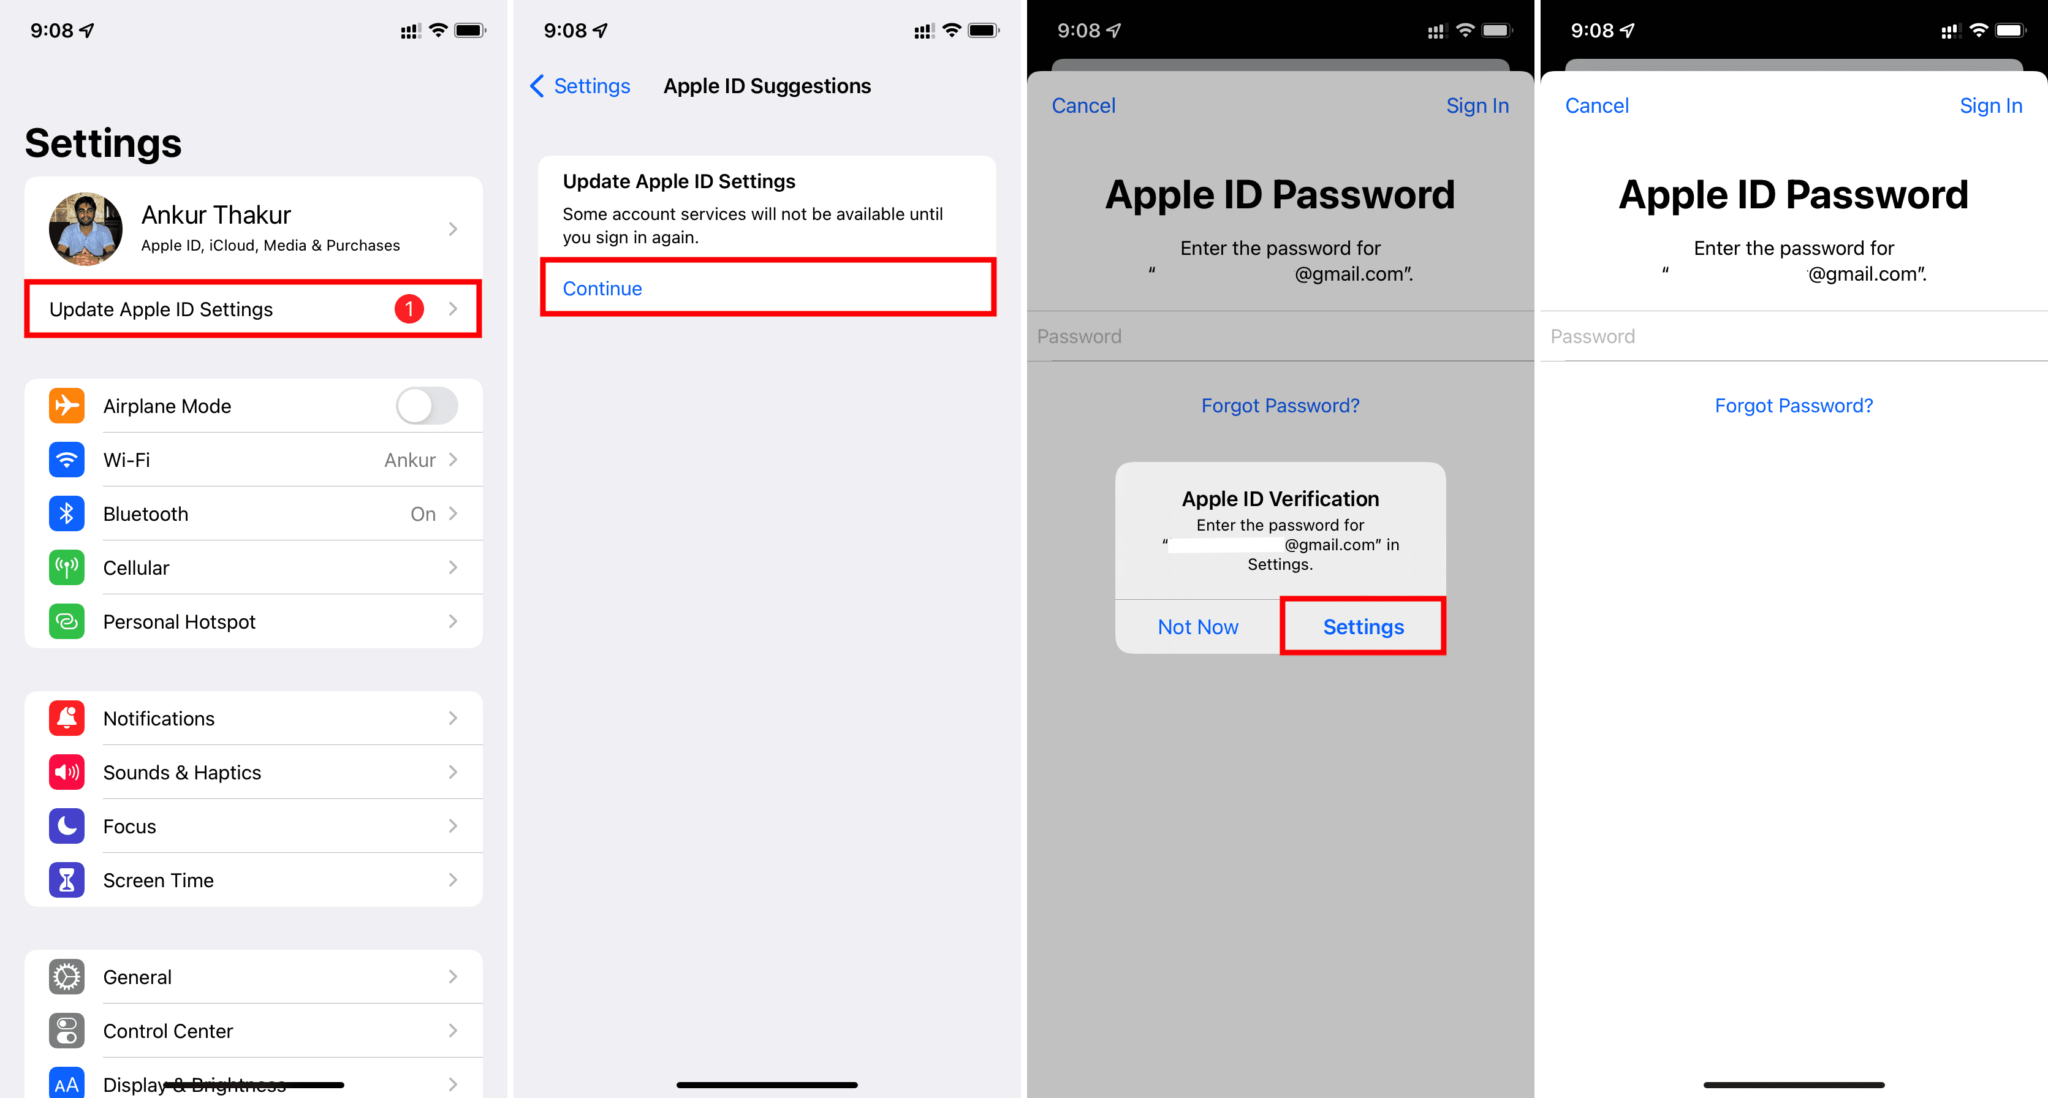 Certifique-se de que você está usando as credenciais corretas da sua conta Apple.
Verifique as configurações de privacidade e segurança do iCloud.